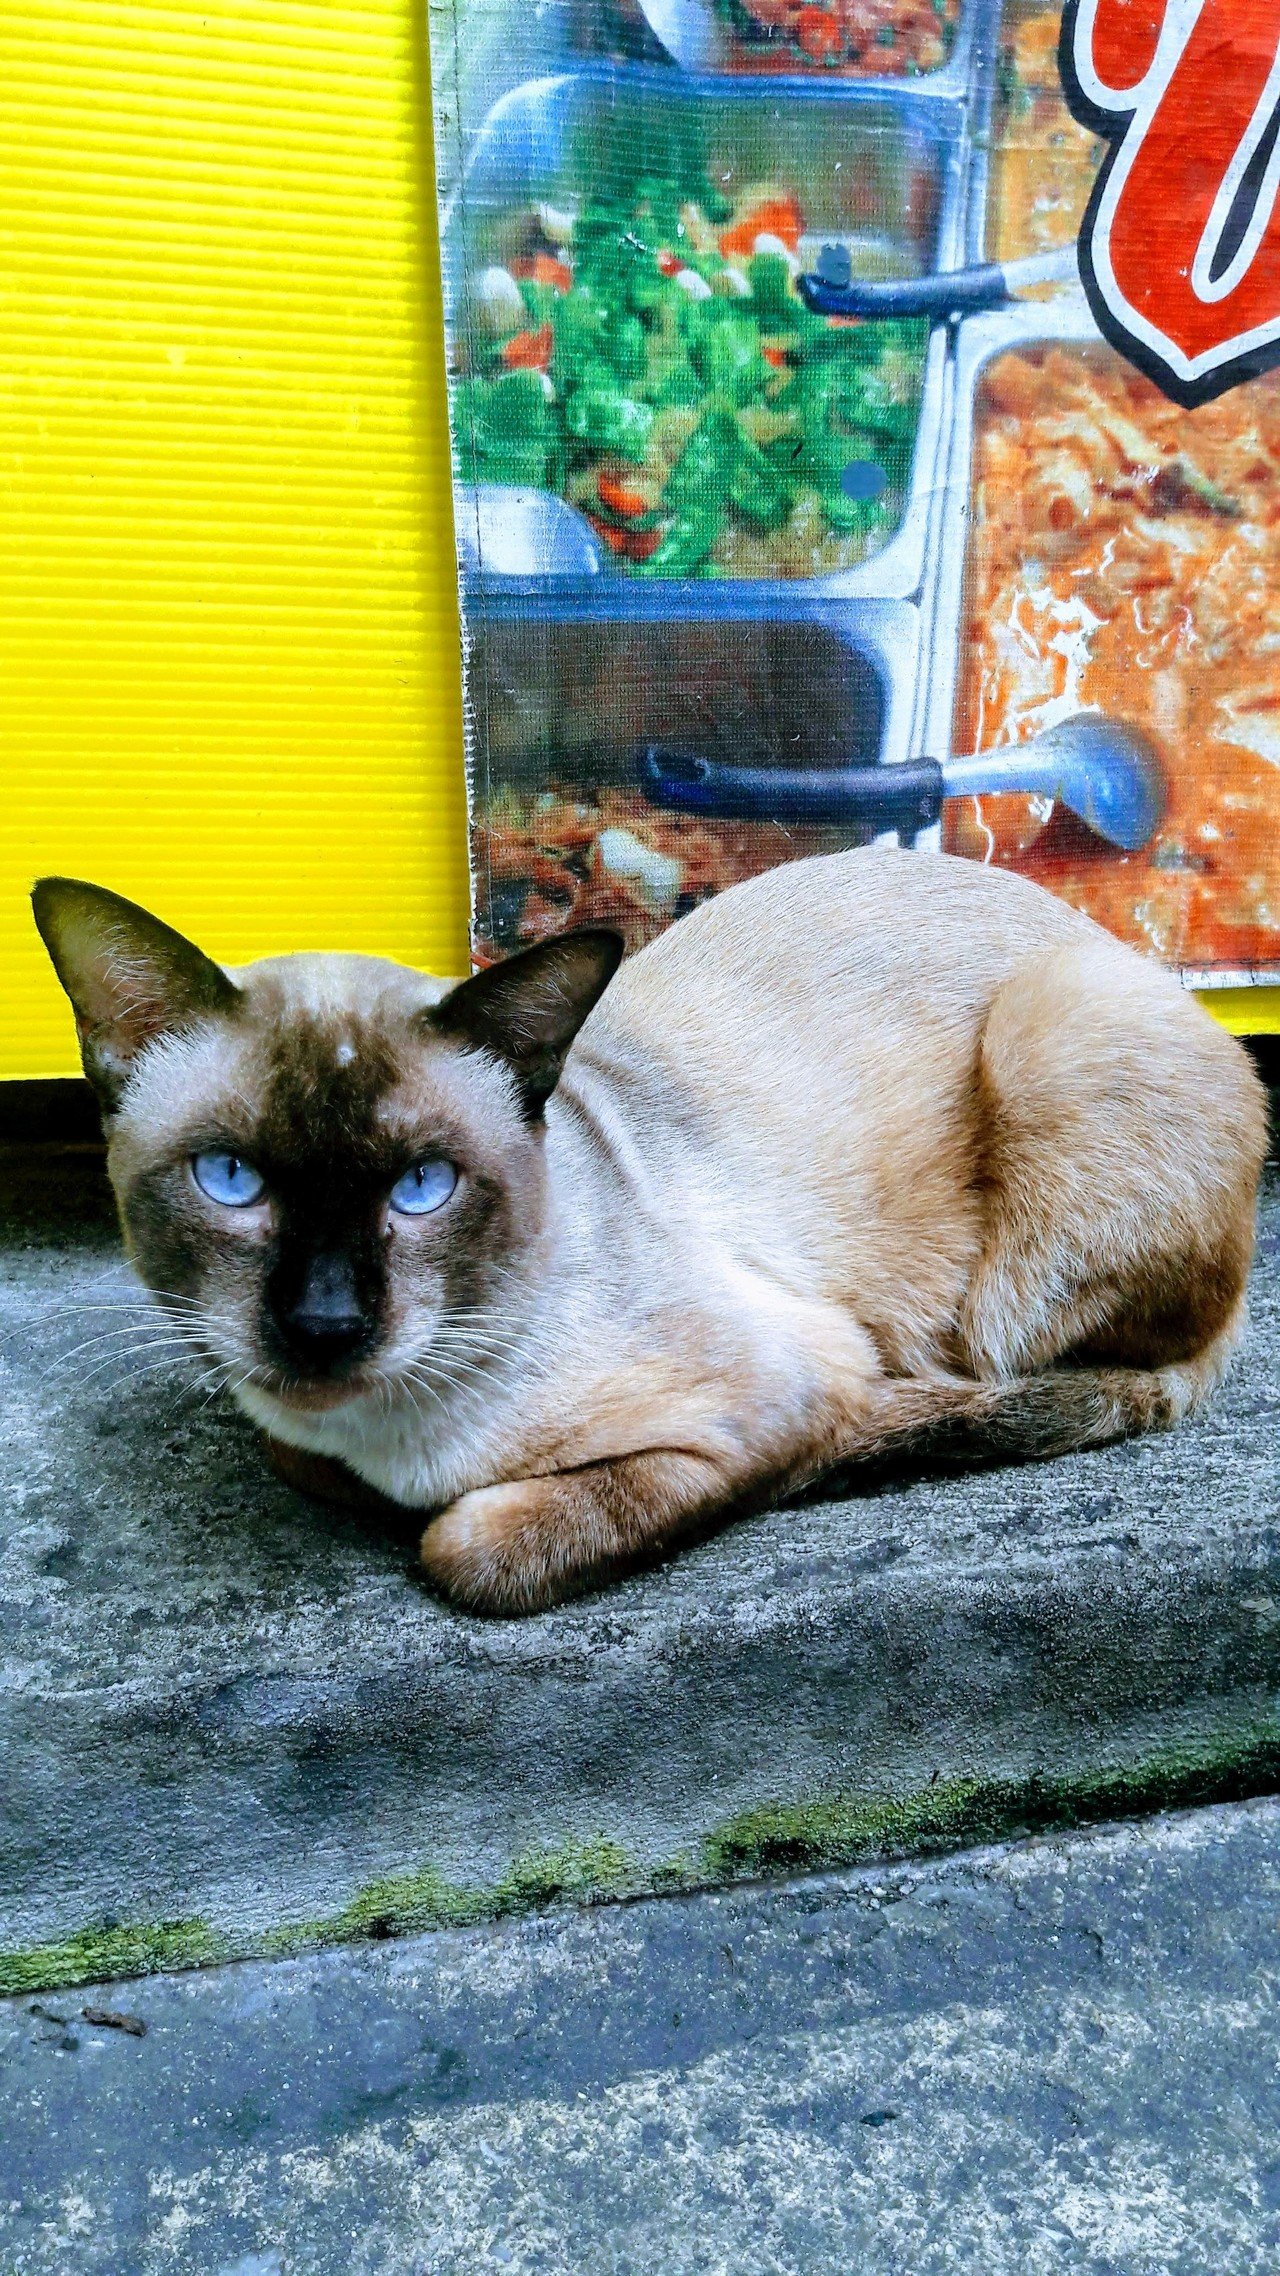 タイにはシャム猫 サイミーズ がそこらじゅうに居るのかと思ったらそうではなかった Milkman57 Note